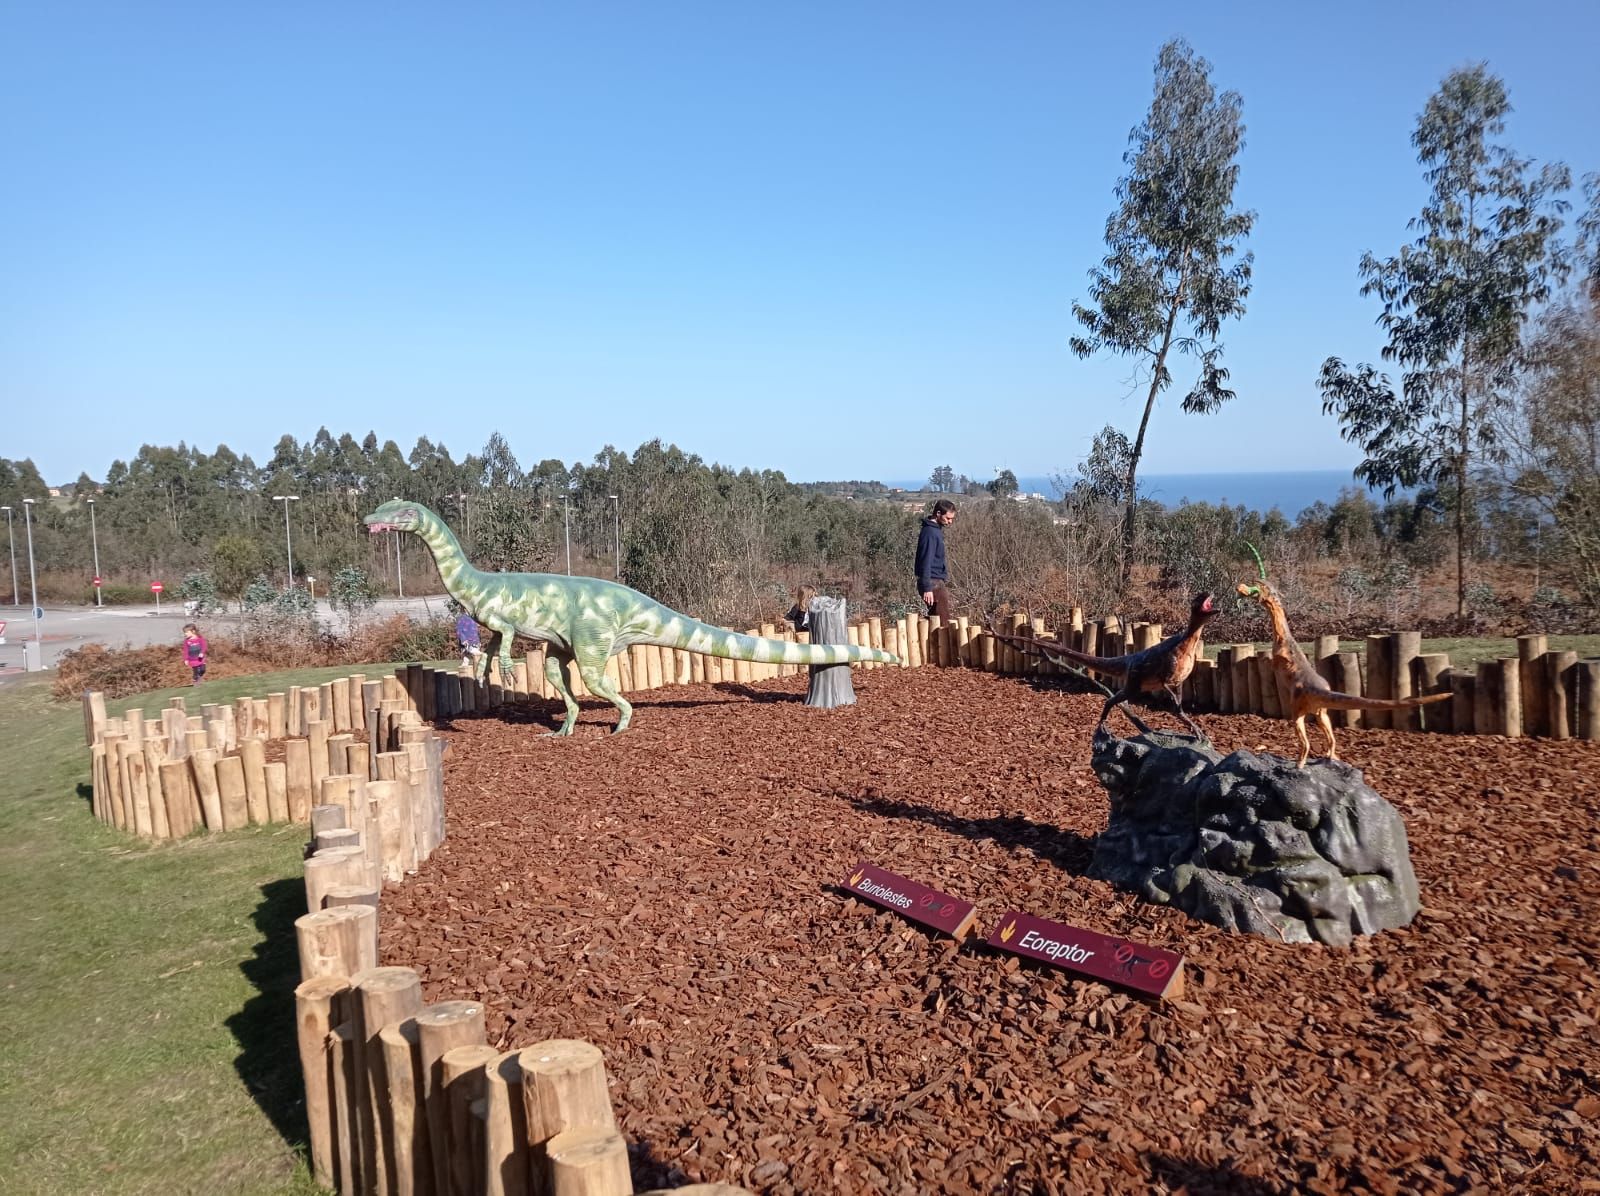 Así son las dos nuevas escenas de dinosaurios gigantes que el MUJA incorpora a su jardín exterior